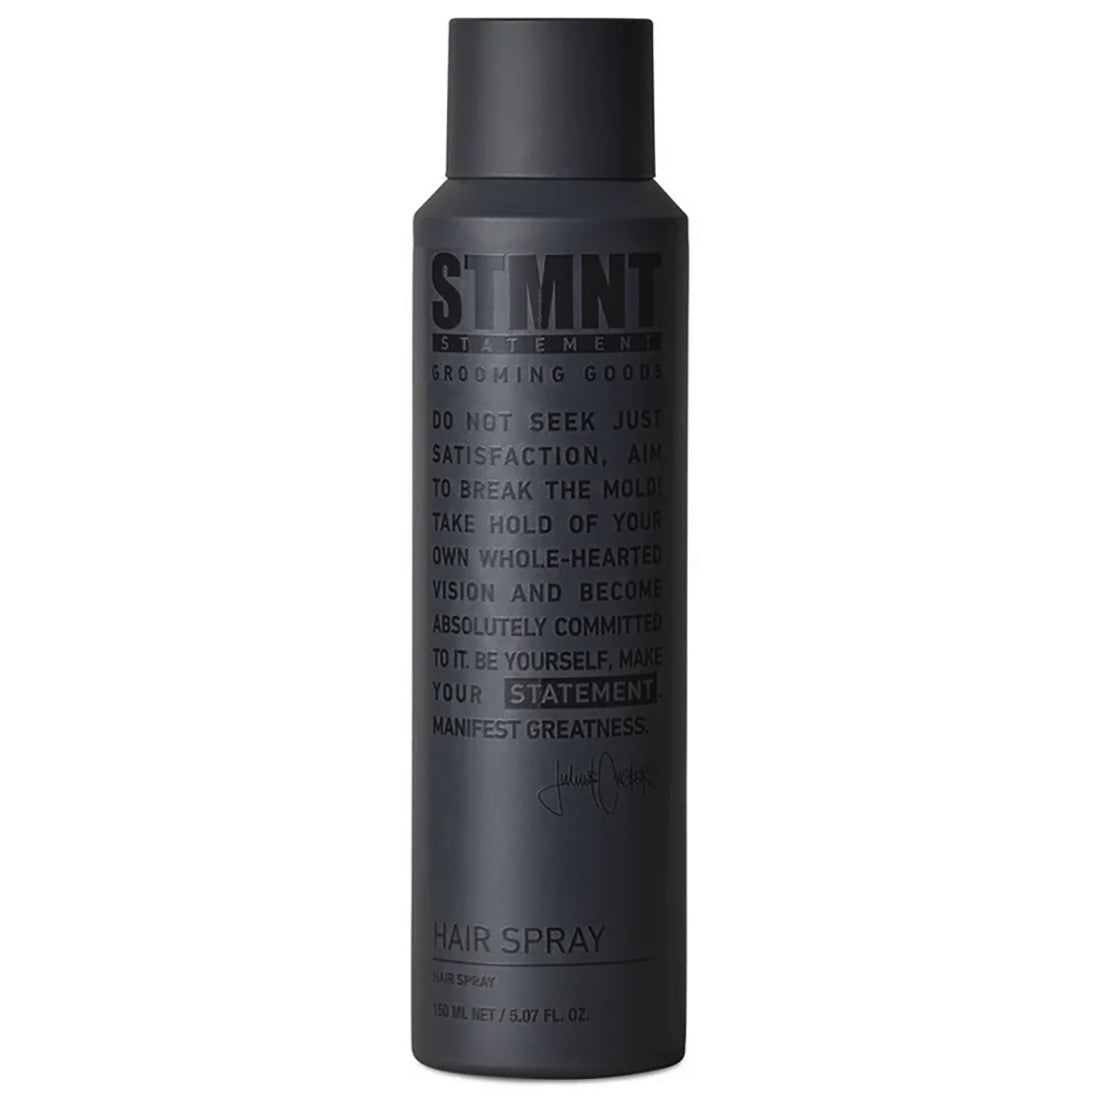 STMNT Statement Grooming Goods Hairspray 